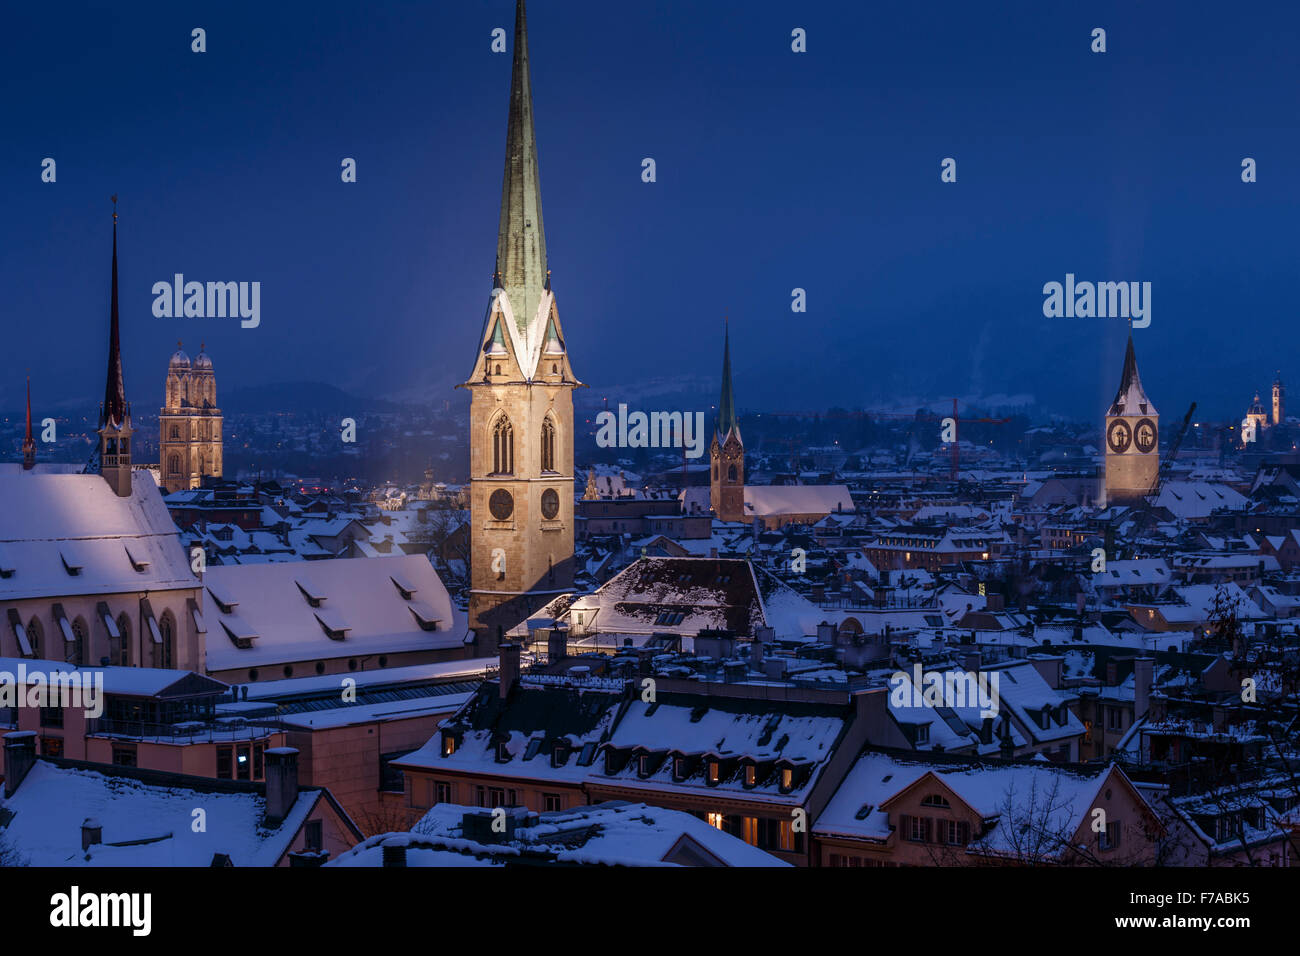 Die Altstadt mit Schnee bedeckten Dächer in der Nacht mit dem beleuchteten gotischen Glockentürme, Zürich, Schweiz. Stockfoto